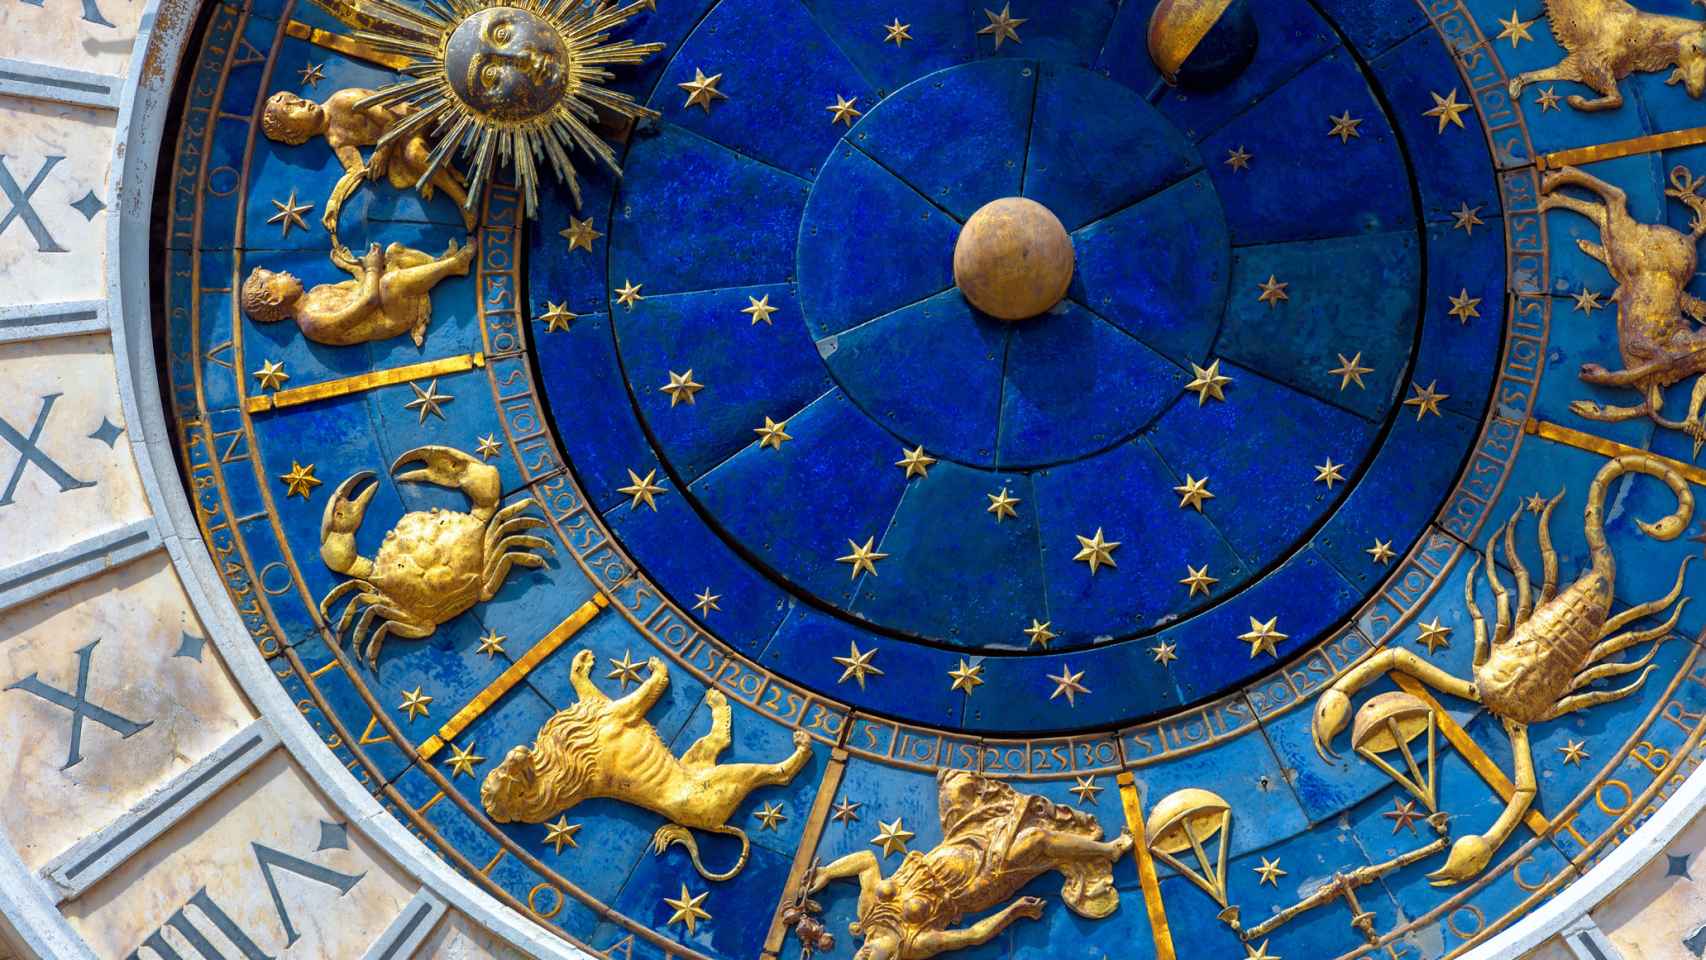 Reloj de la torre dell Orologio en Plaza San Marcos (Venecia).